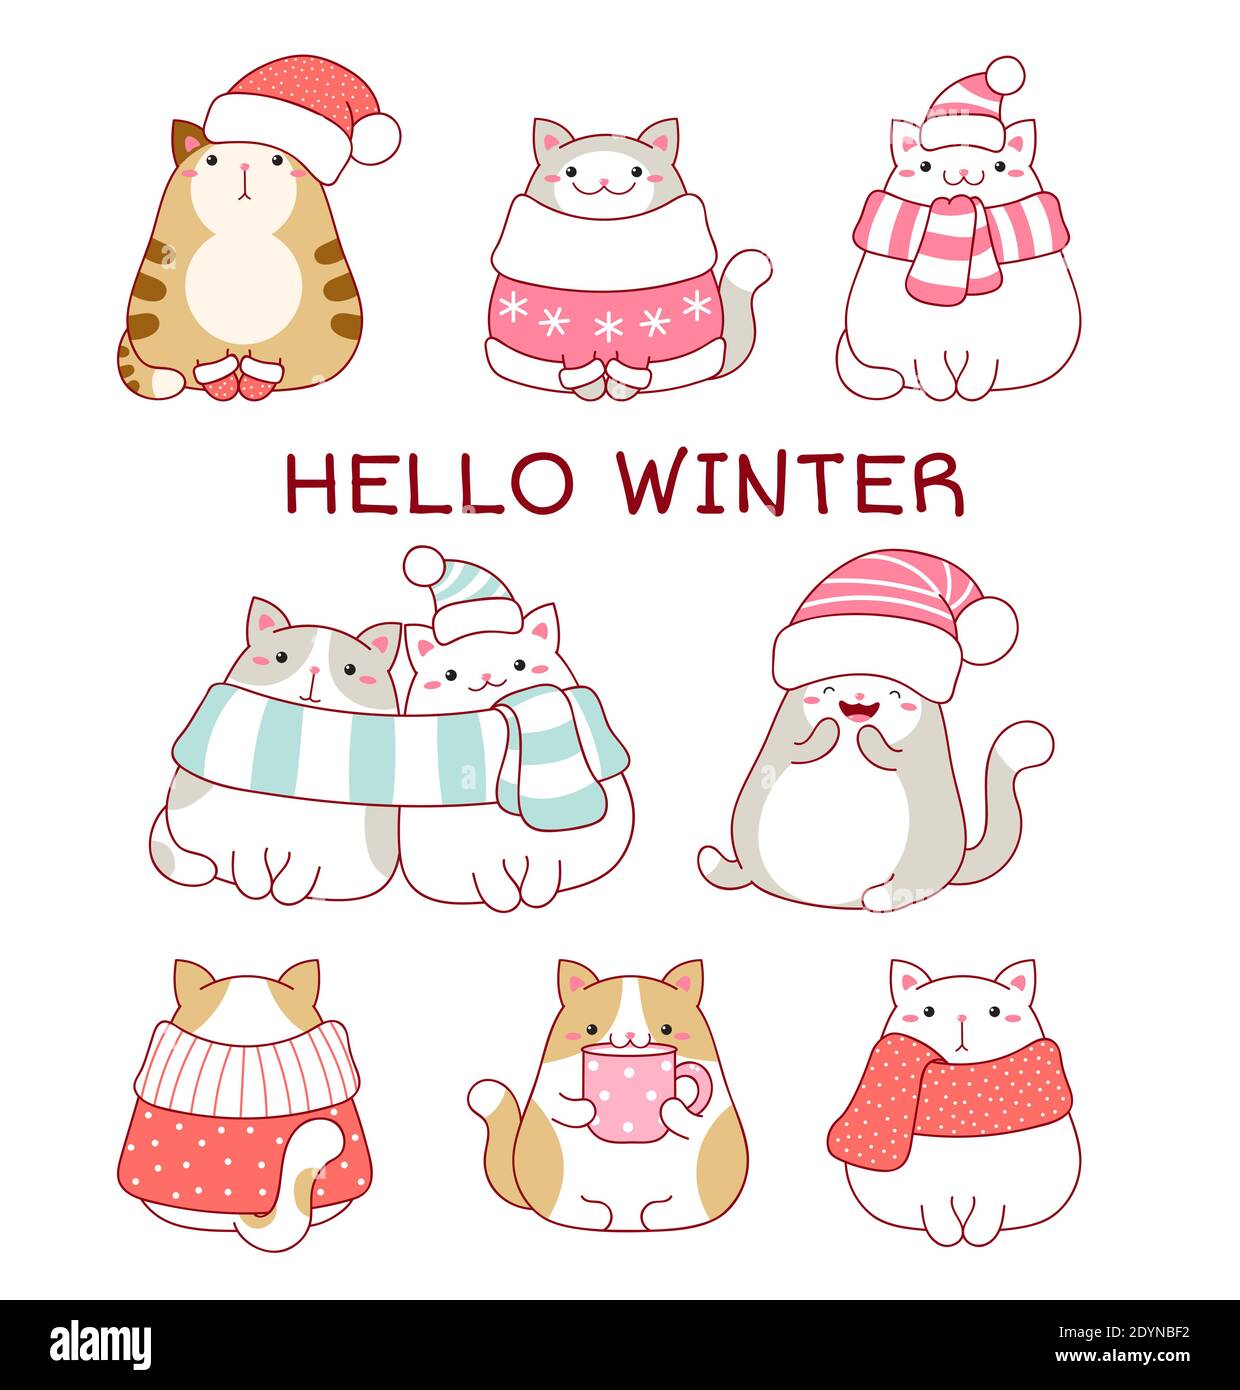 Bonjour hiver. Collection de Noël de jolis chats gras dans des foulards et des chapeaux. Ensemble de chats charmants dans le style kawaii. Illustration vectorielle EPS8 Illustration de Vecteur